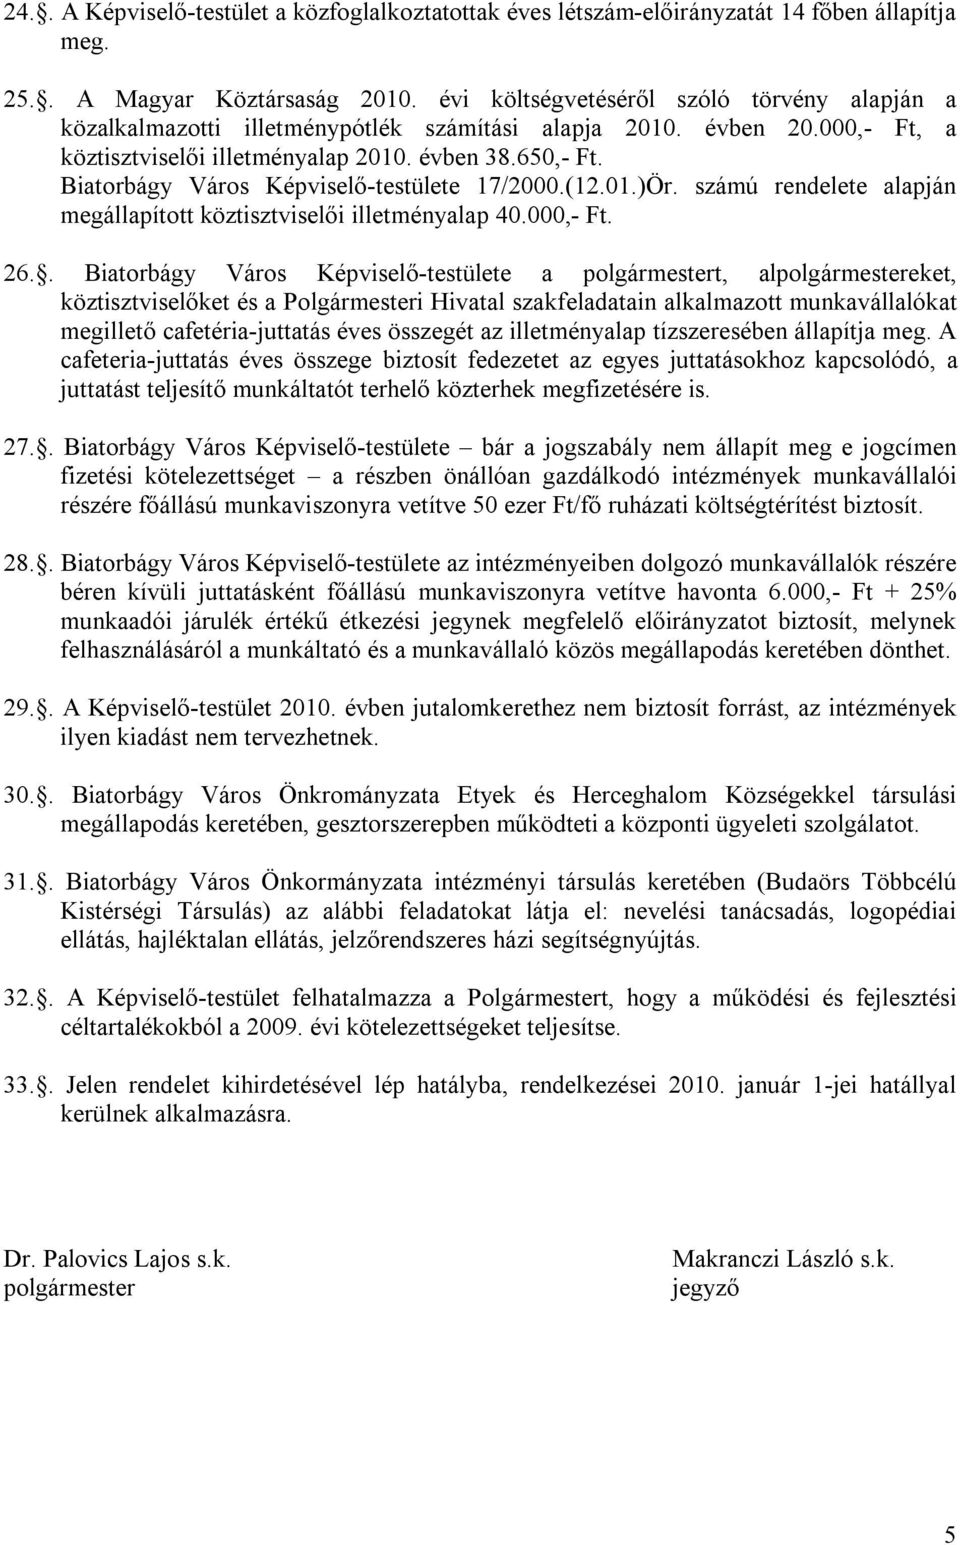 Biatorbágy Város Képviselő-testülete 17/2000.(12.01.)Ör. számú rendelete alapján megállapított köztisztviselői illetményalap 40.000,- Ft. 26.